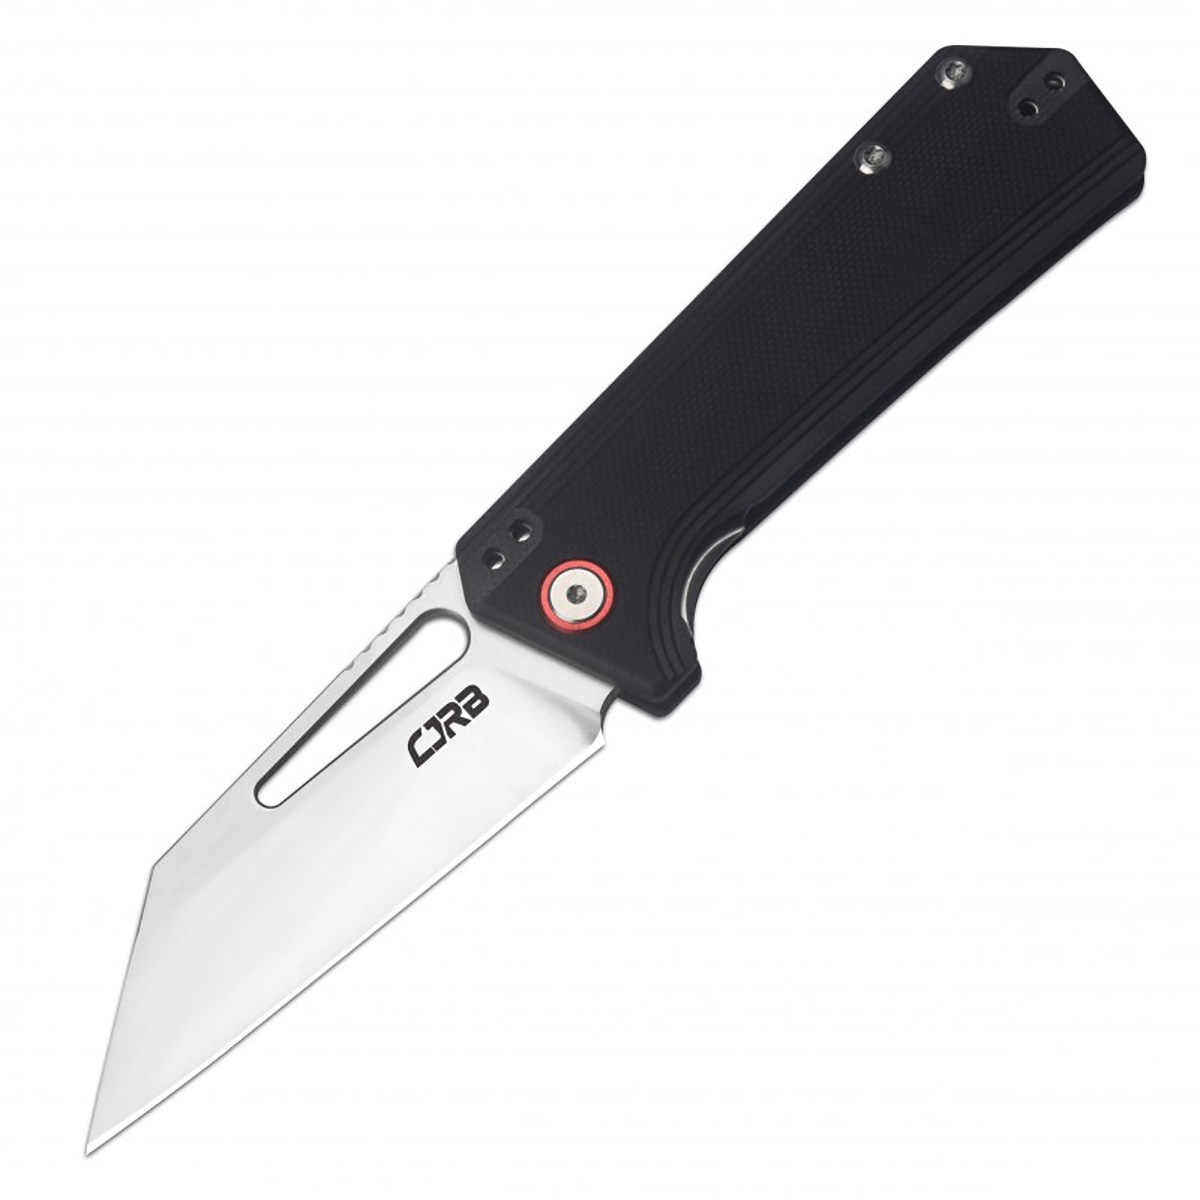 Складной нож CJRB Ruffian, сталь AR-RPM9, рукоять G10, черный, Бренды, CJRB Cutlery